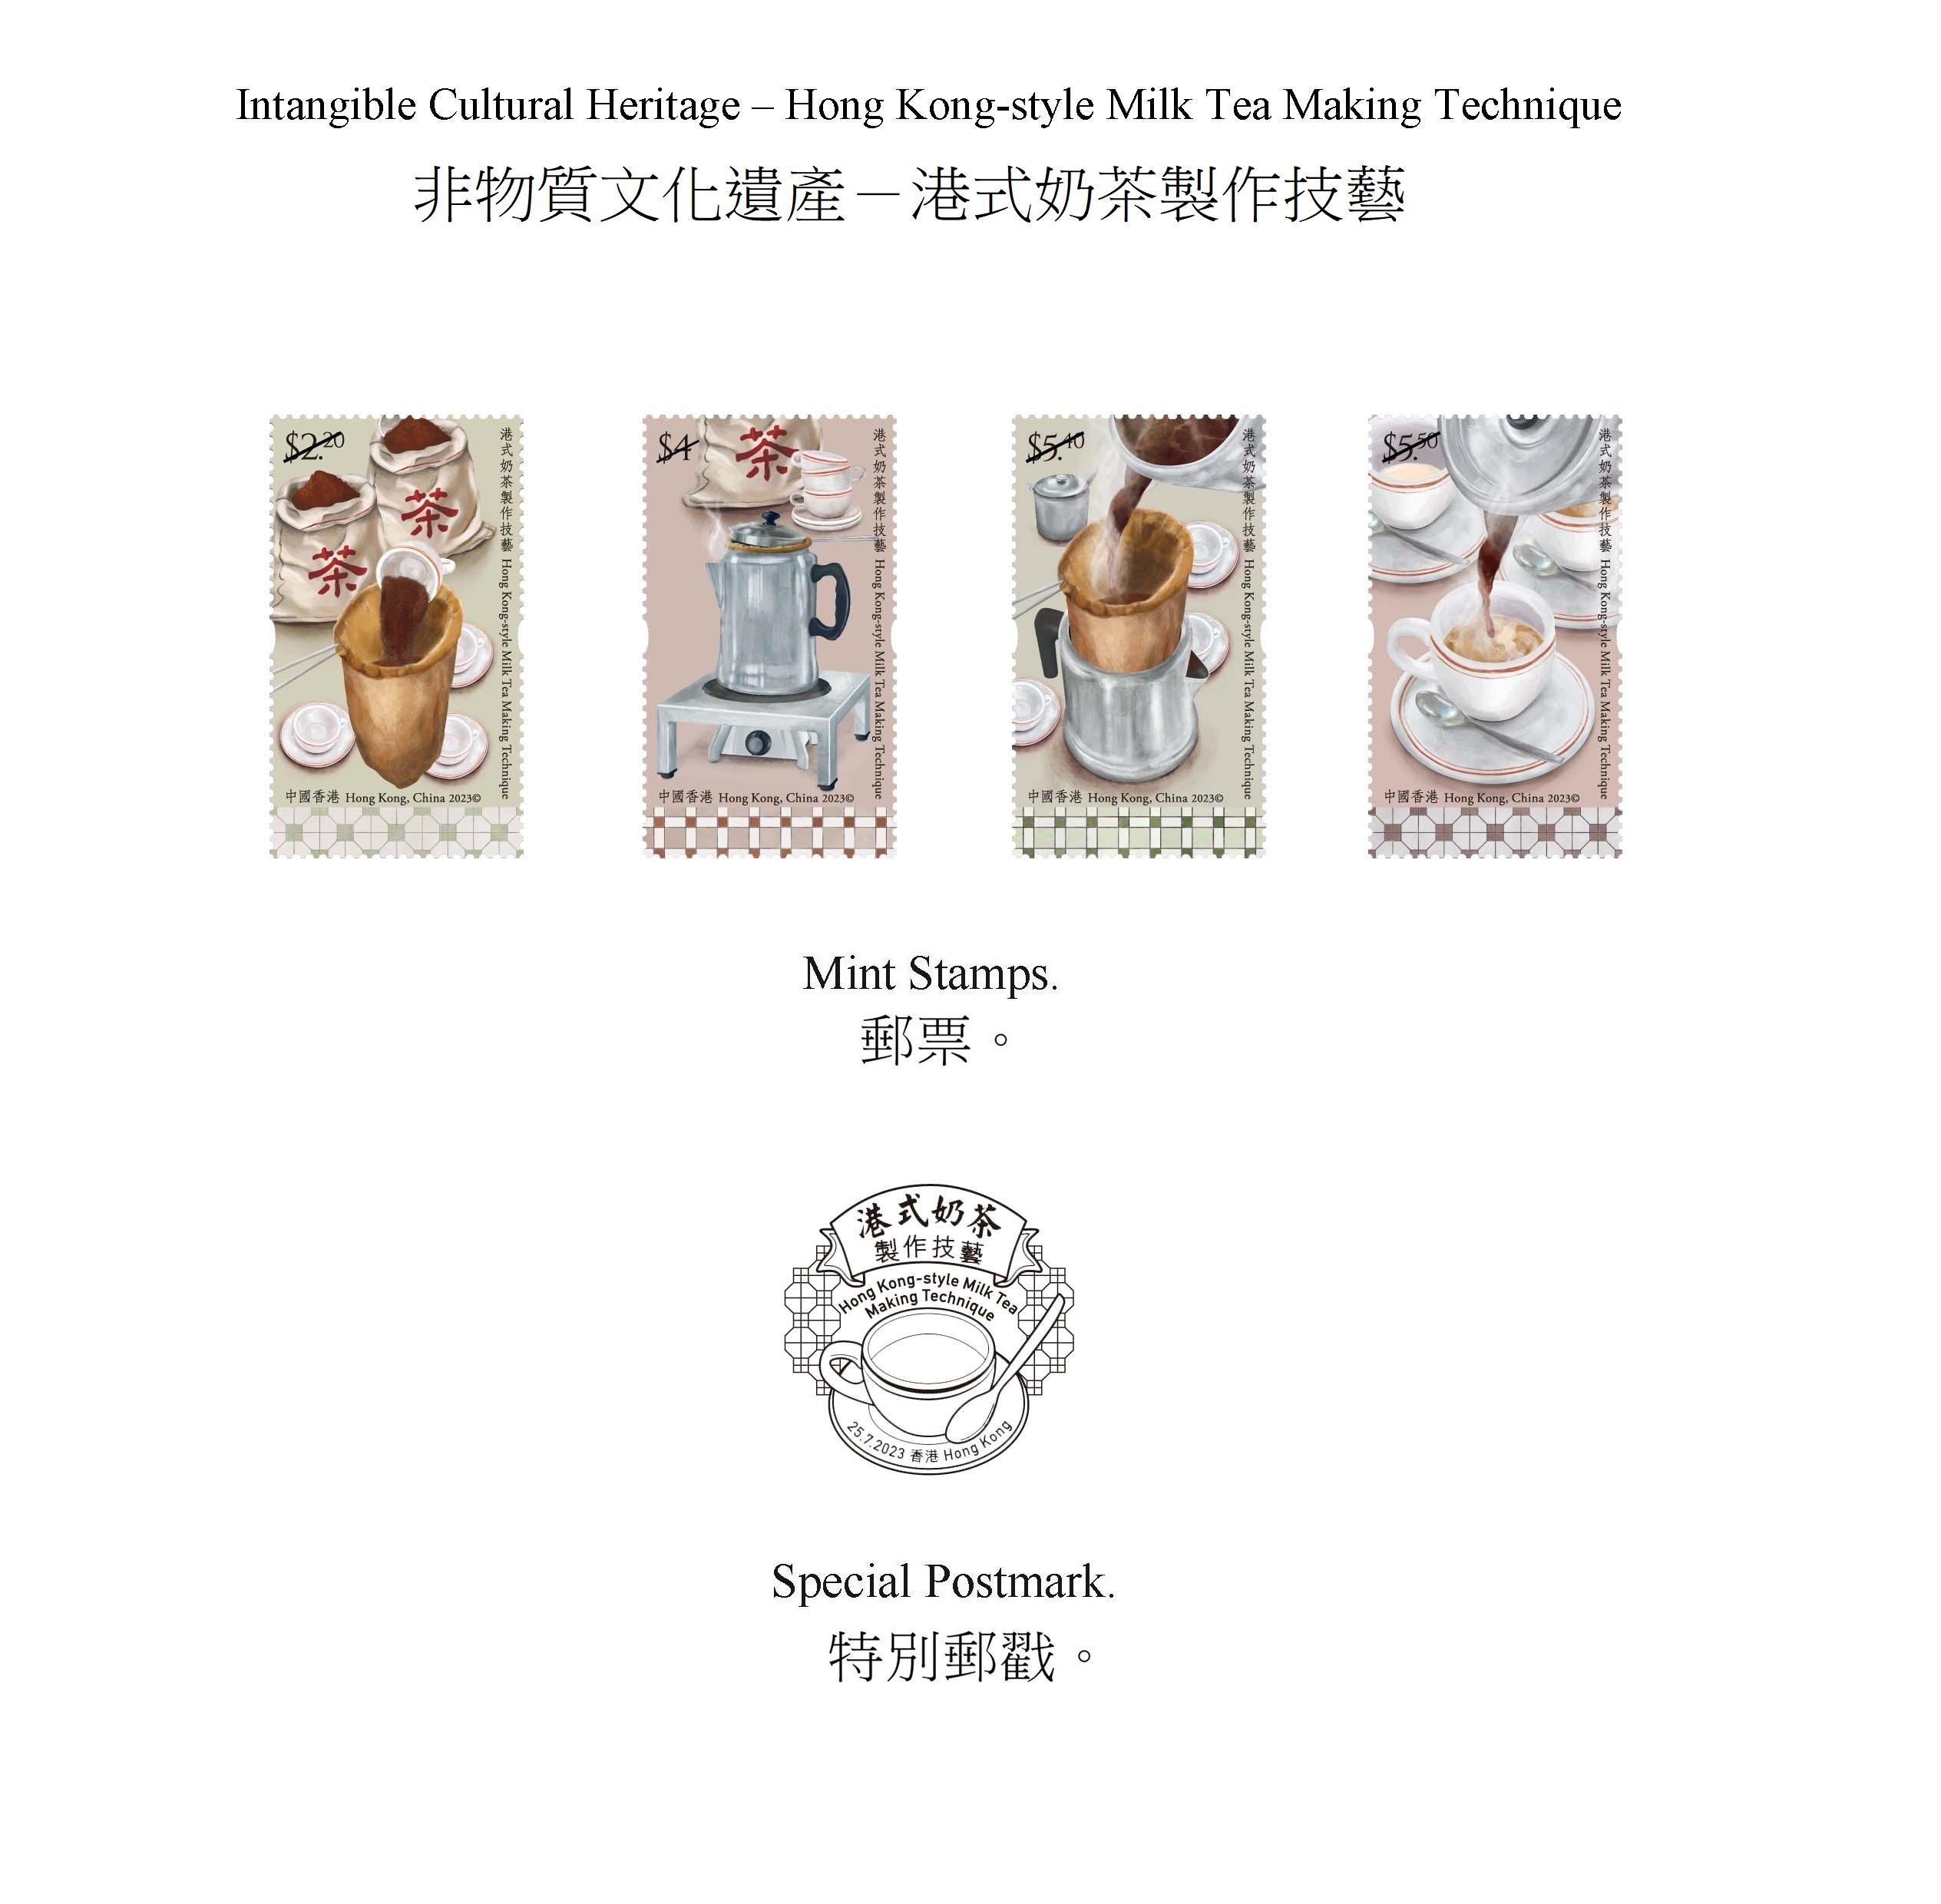 香港邮政七月二十五日（星期二）发行以「非物质文化遗产——港式奶茶制作技艺」为题的特别邮票及相关集邮品。图示邮票和特别邮戳。